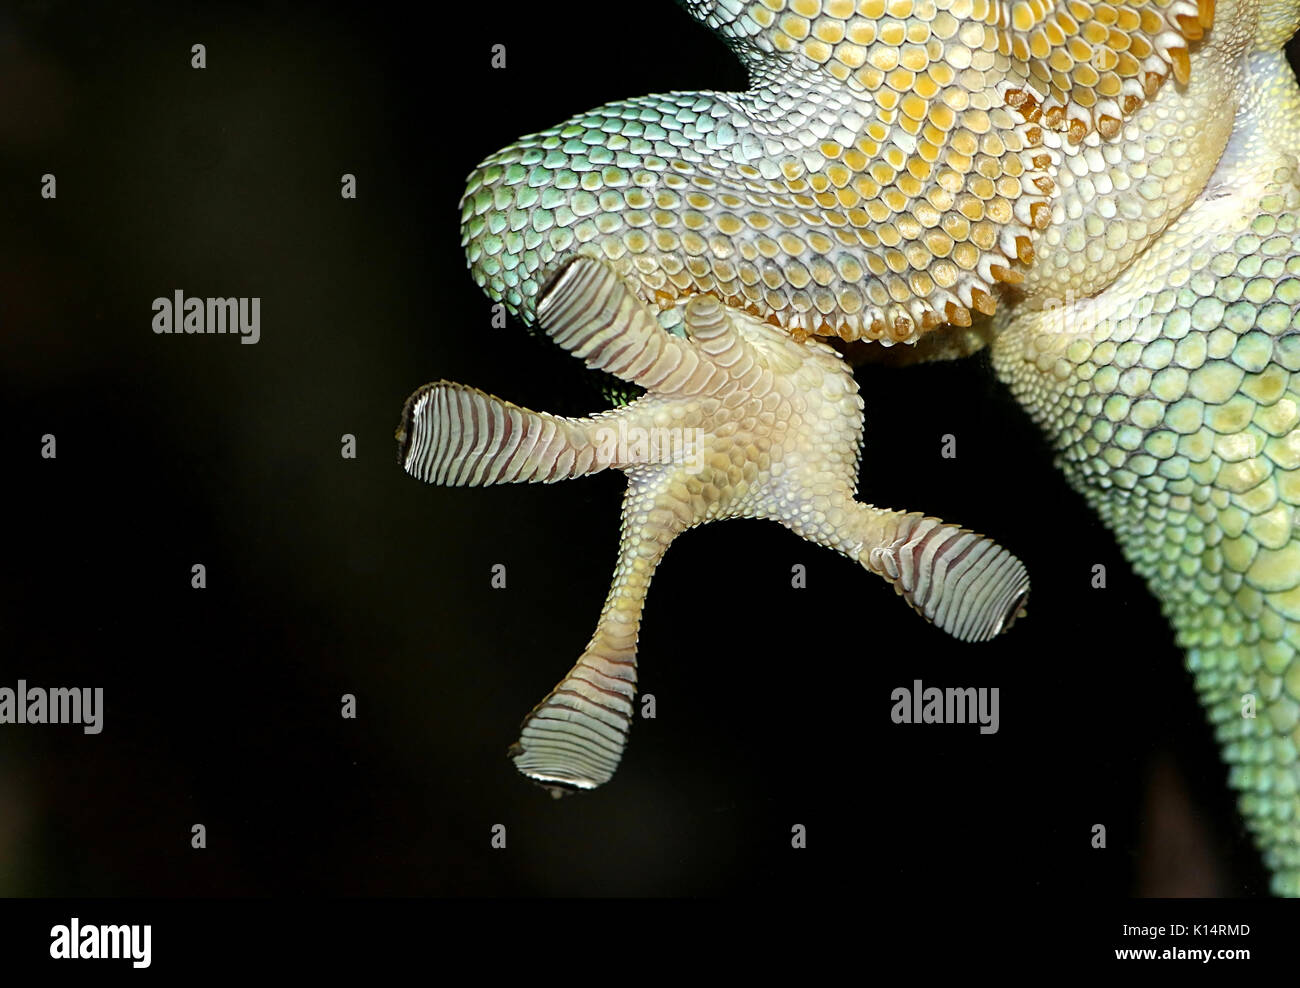 Nahaufnahme eines Grünen Madagaskar Taggecko (Phelsuma madagascariensis) Hinterfüße auf eine Glasscheibe mit klebrigen toe Pads festhalten Stockfoto